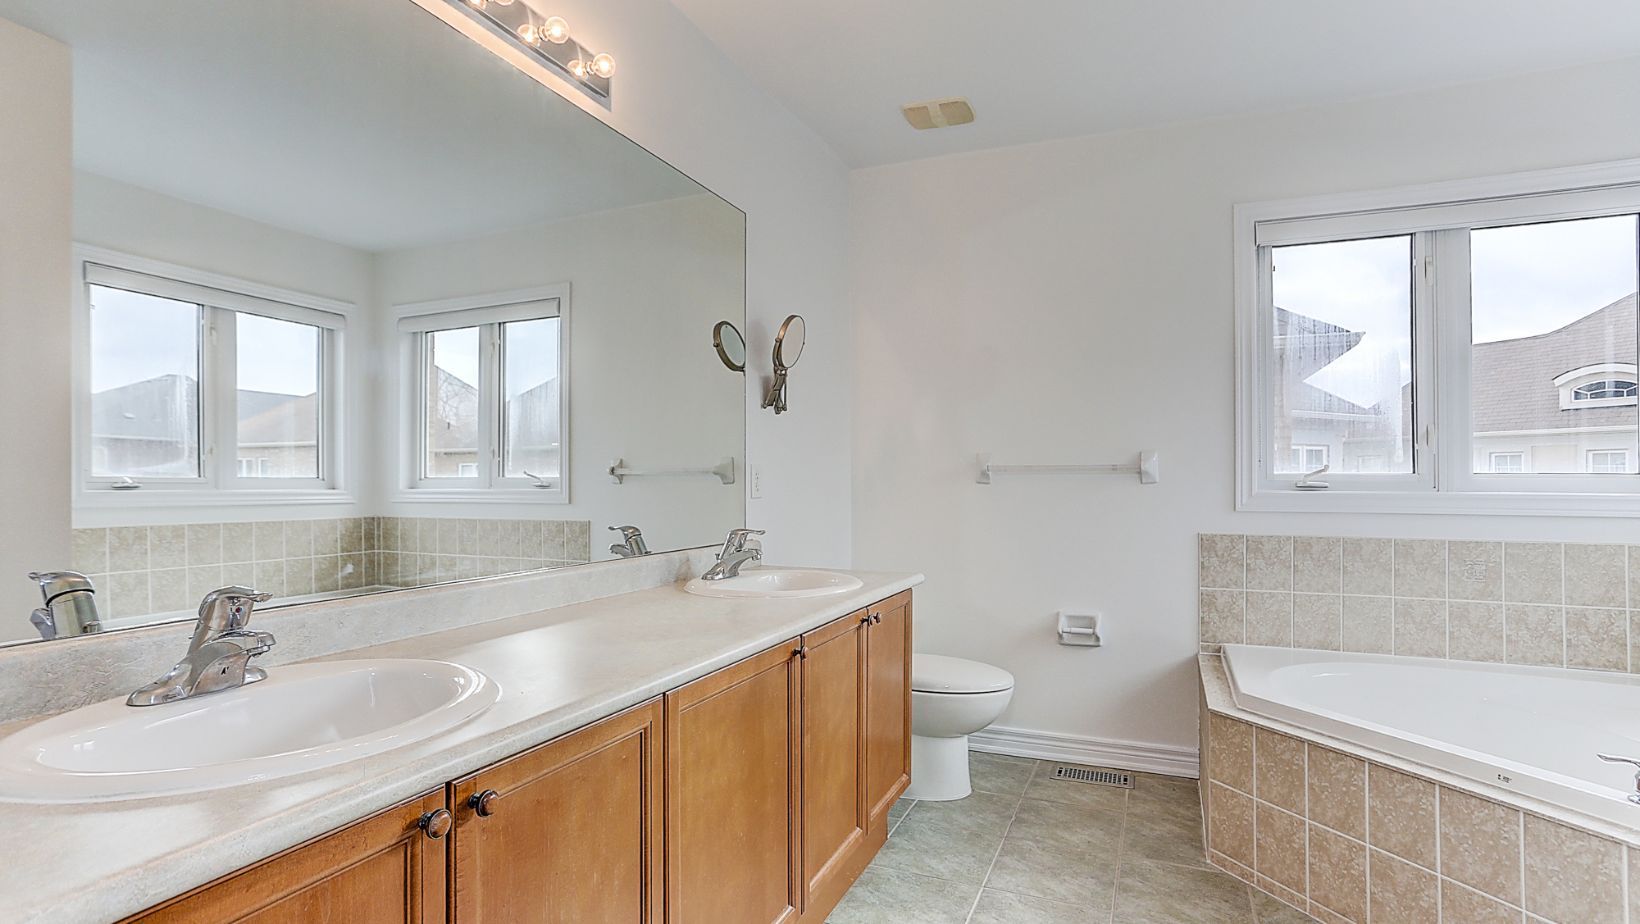 A spacious bathroom of a house, with a bathtub on tiles